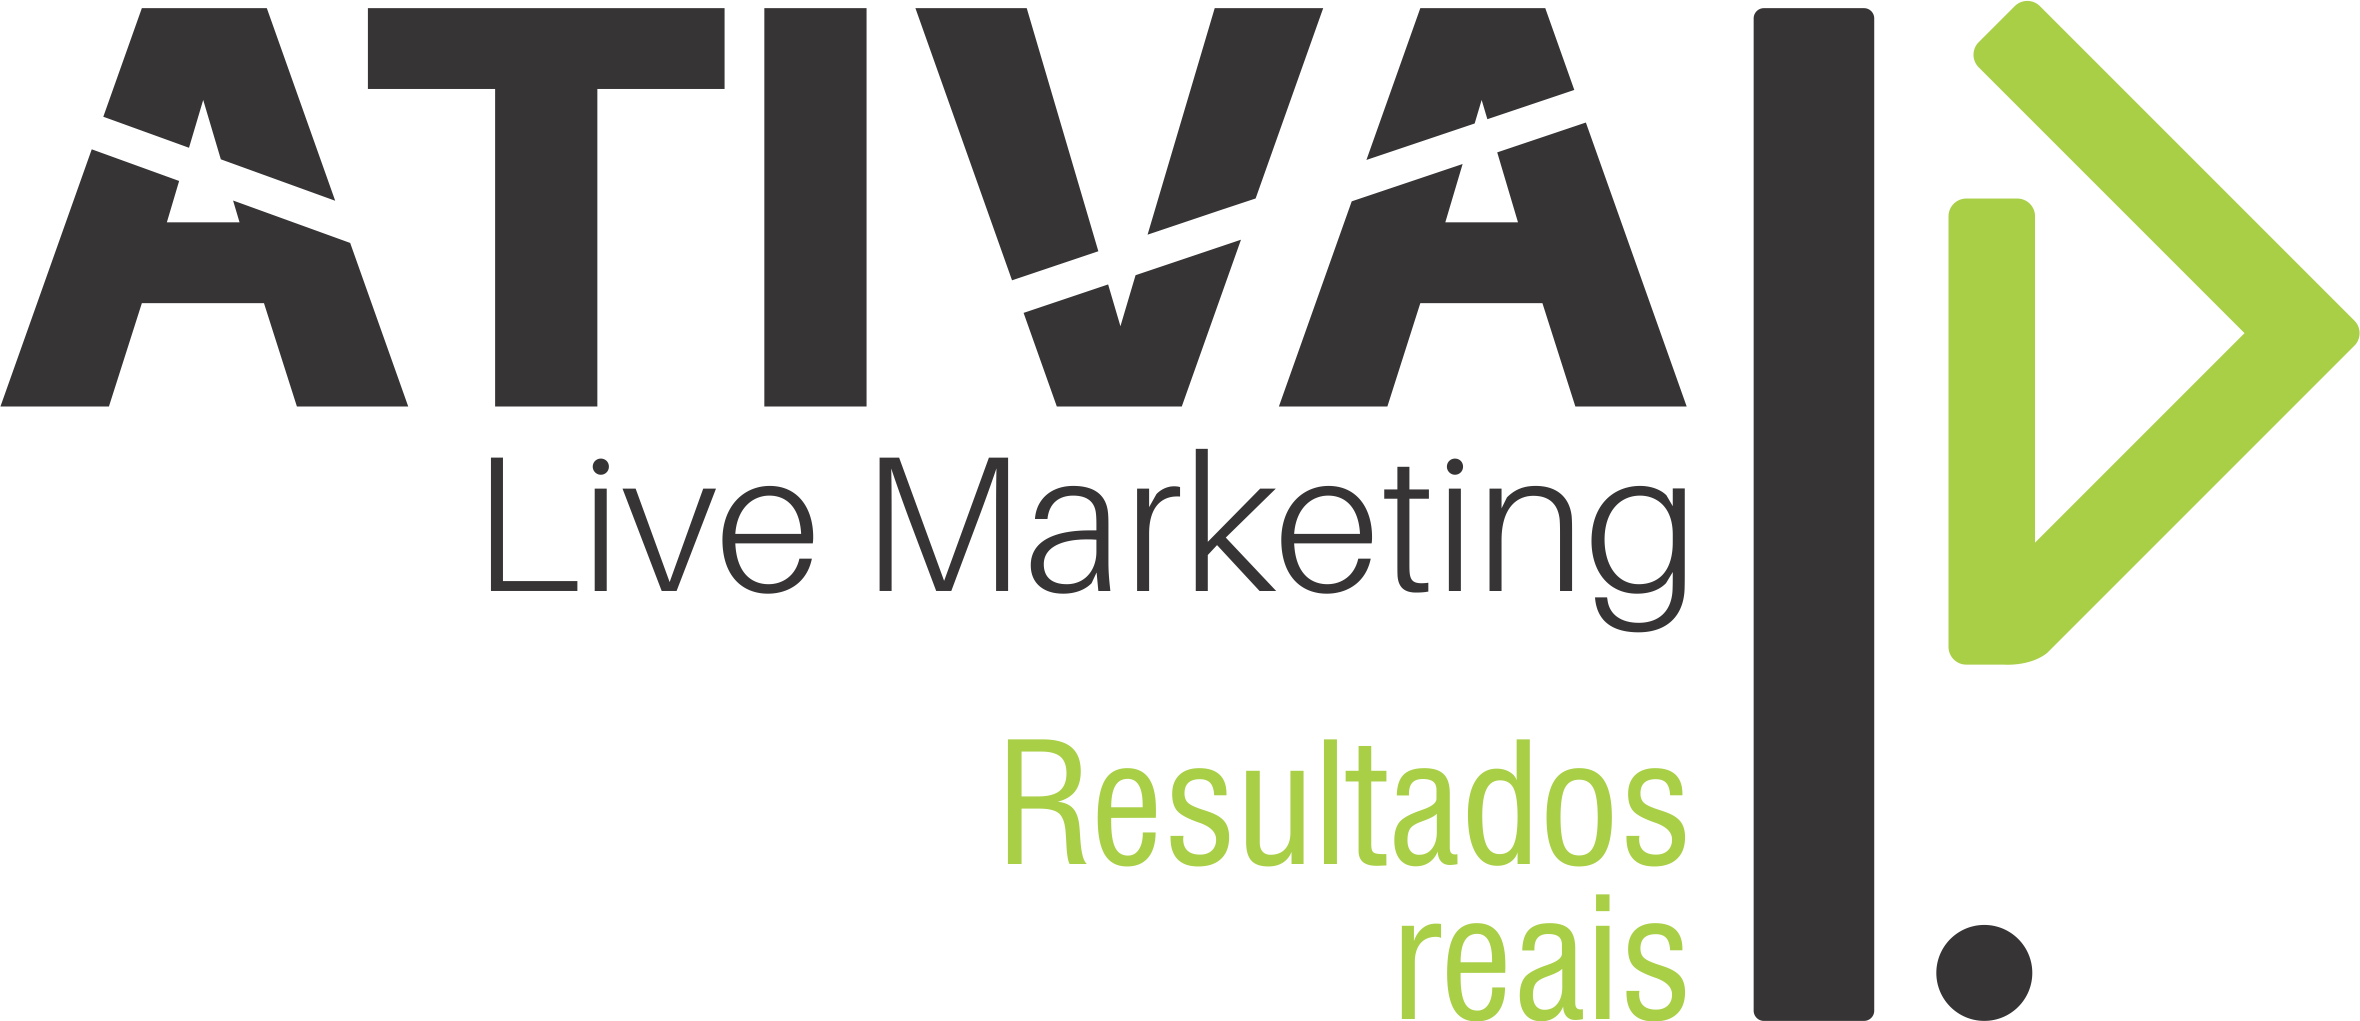 Ativa Live Marketing